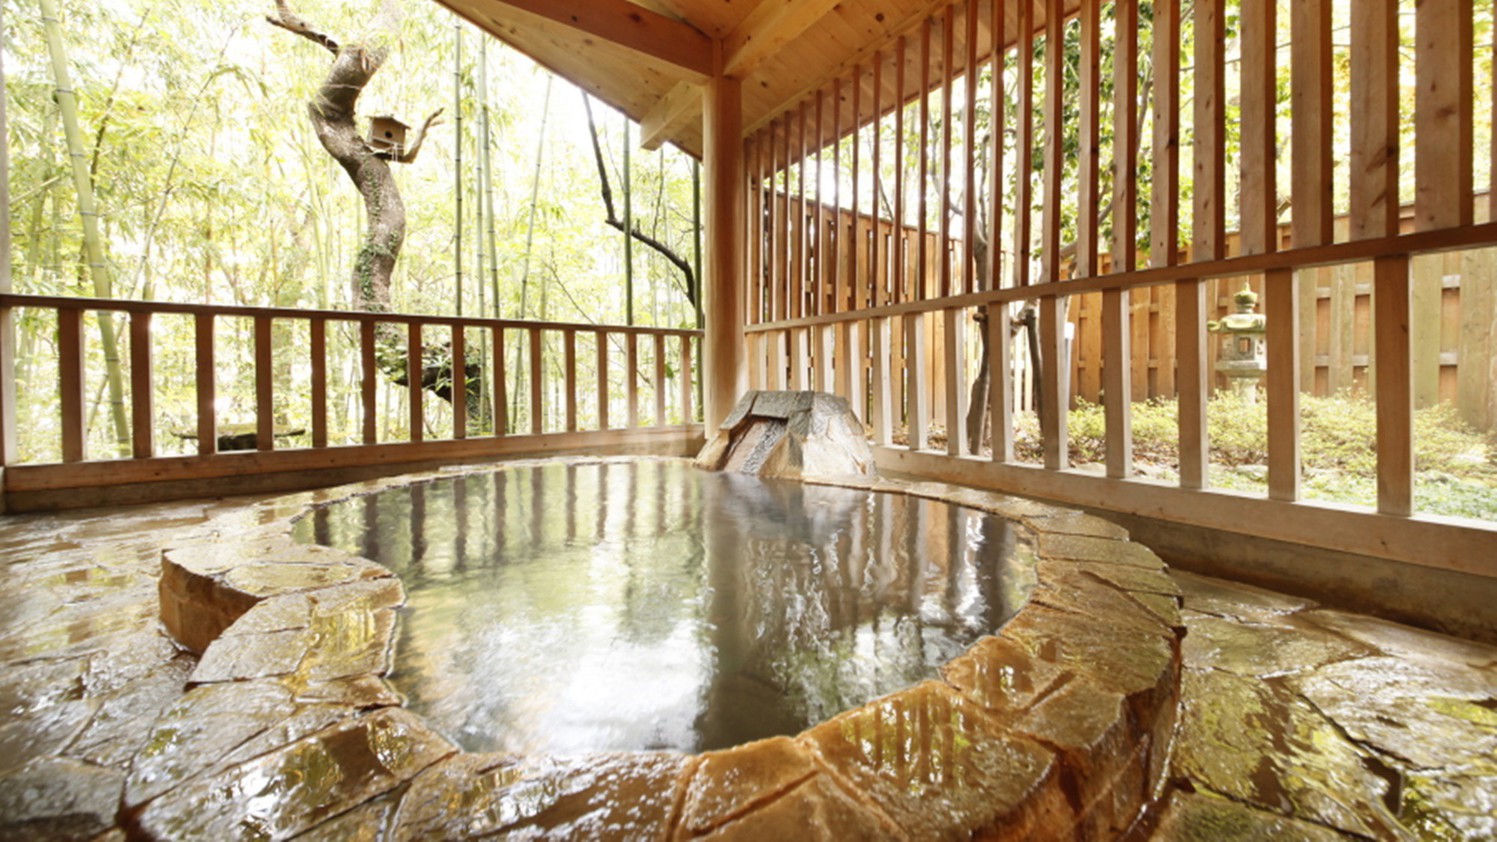 【露天風呂付特別室】露天風呂が備え付けてあるお部屋です。自然の景色をご堪能ください。